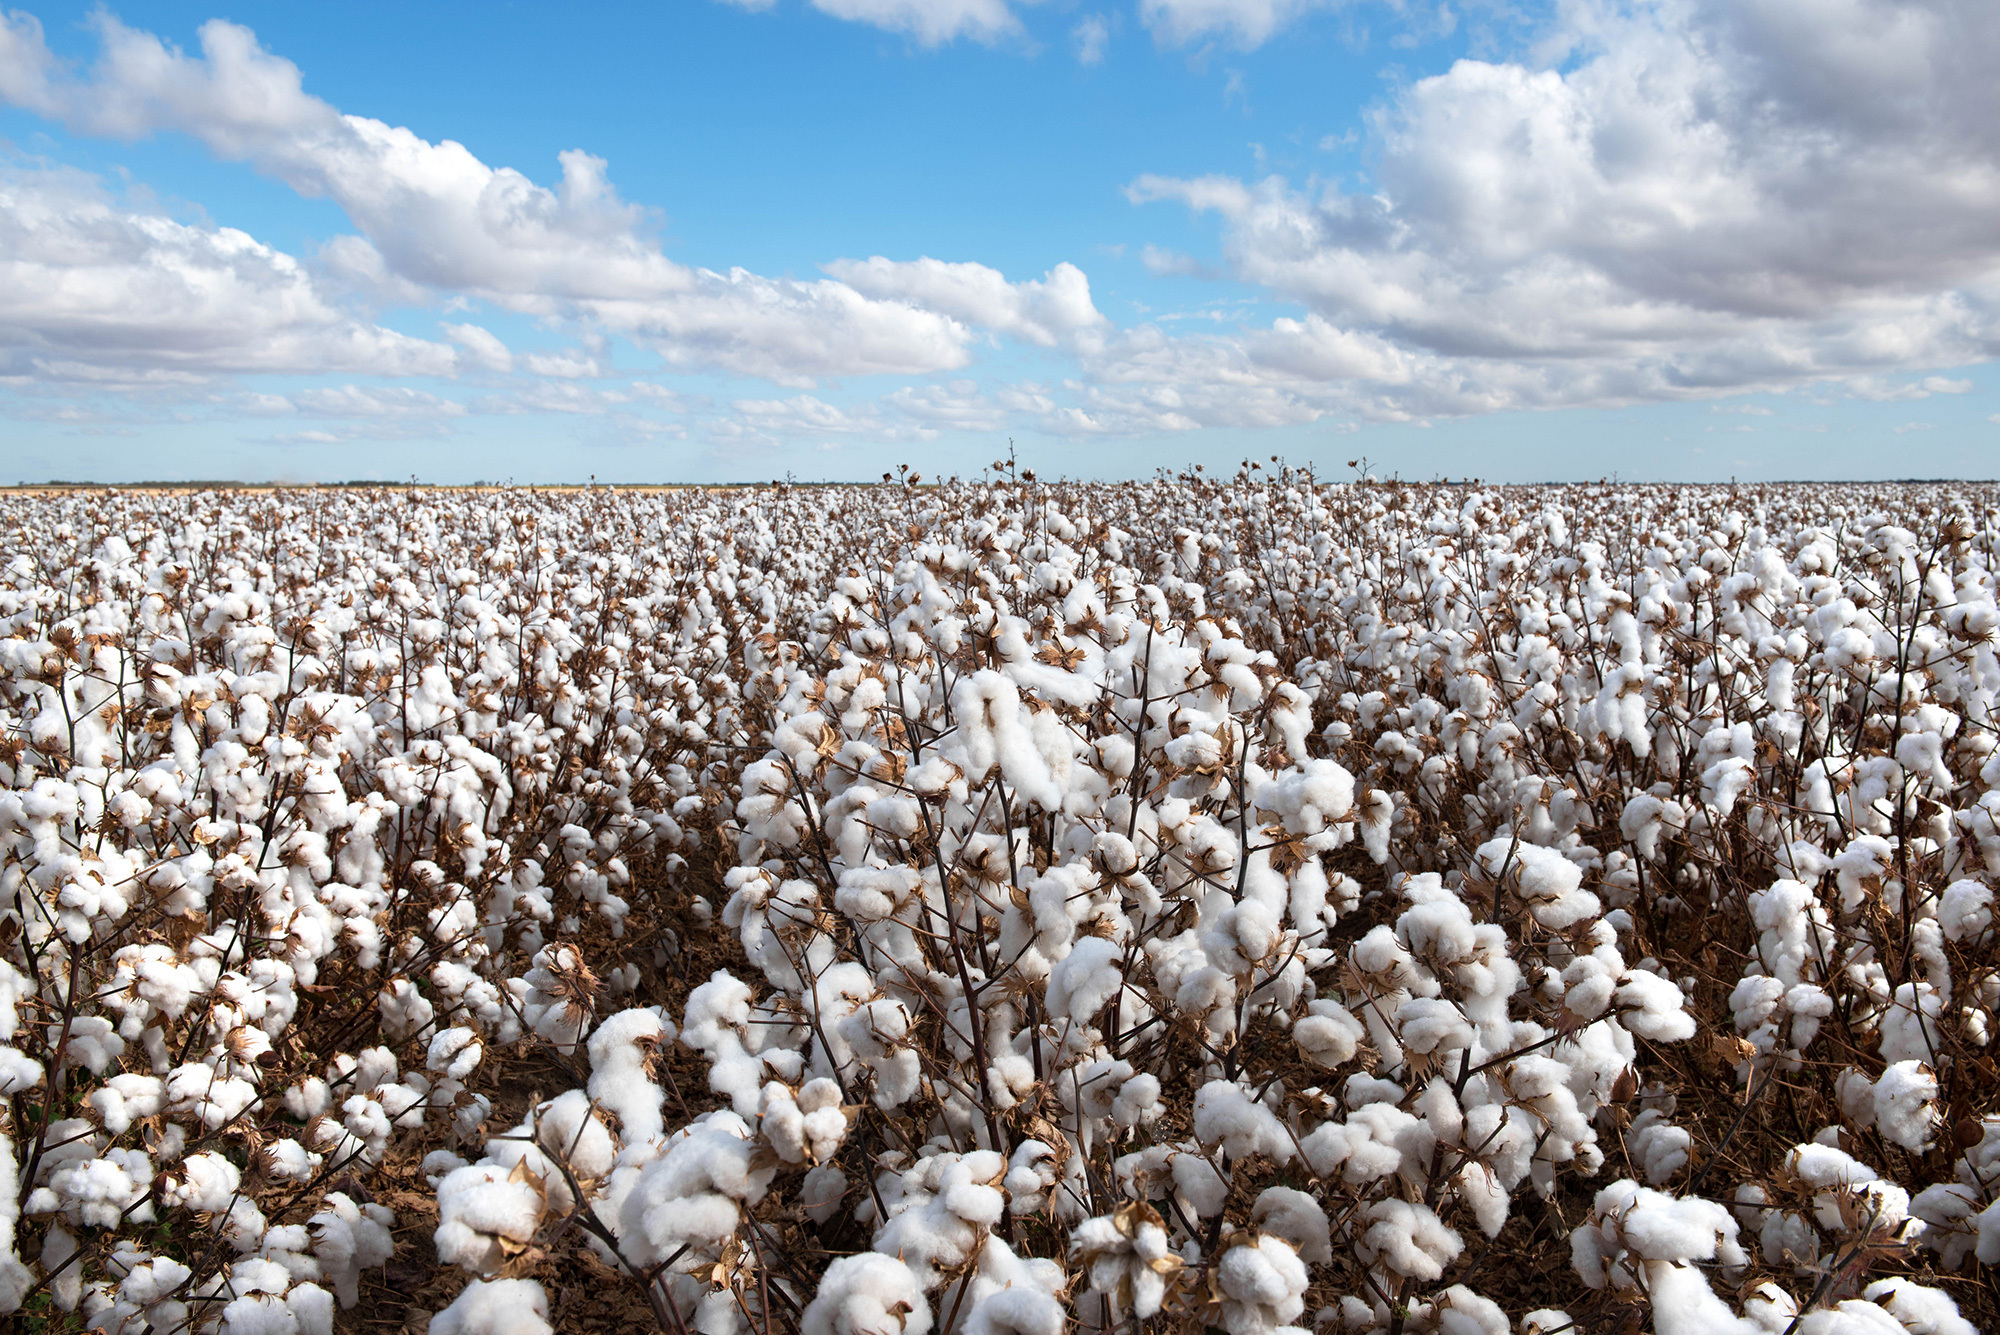 Cotton crop in NSW, Australia